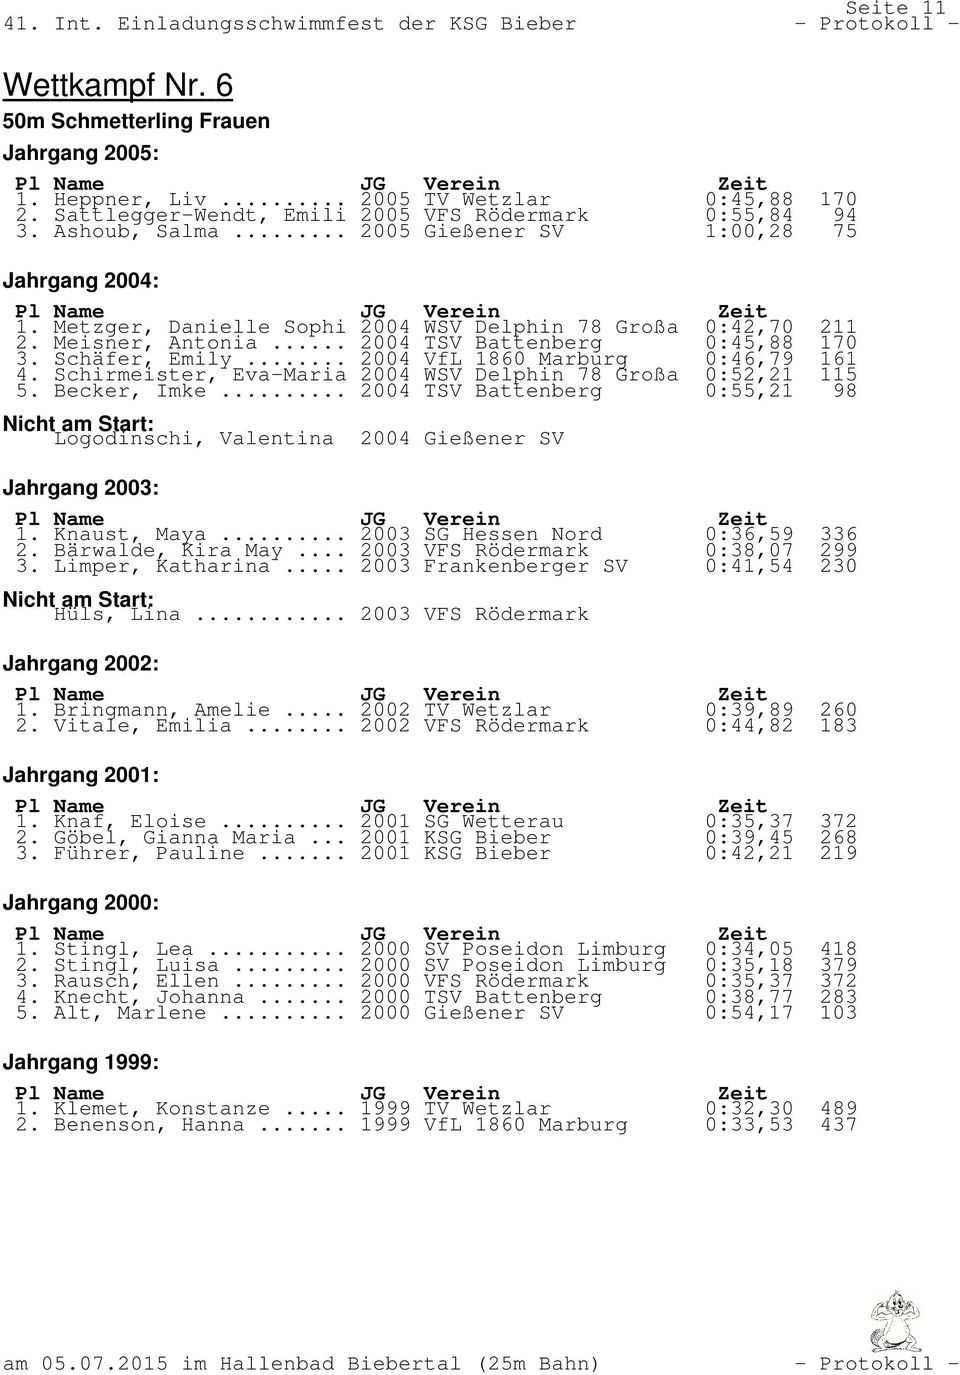 .. 2004 VfL 1860 Marburg 0:46,79 161 4. Schirmeister, Eva-Maria 2004 WSV Delphin 78 Großa 0:52,21 115 5. Becker, Imke.